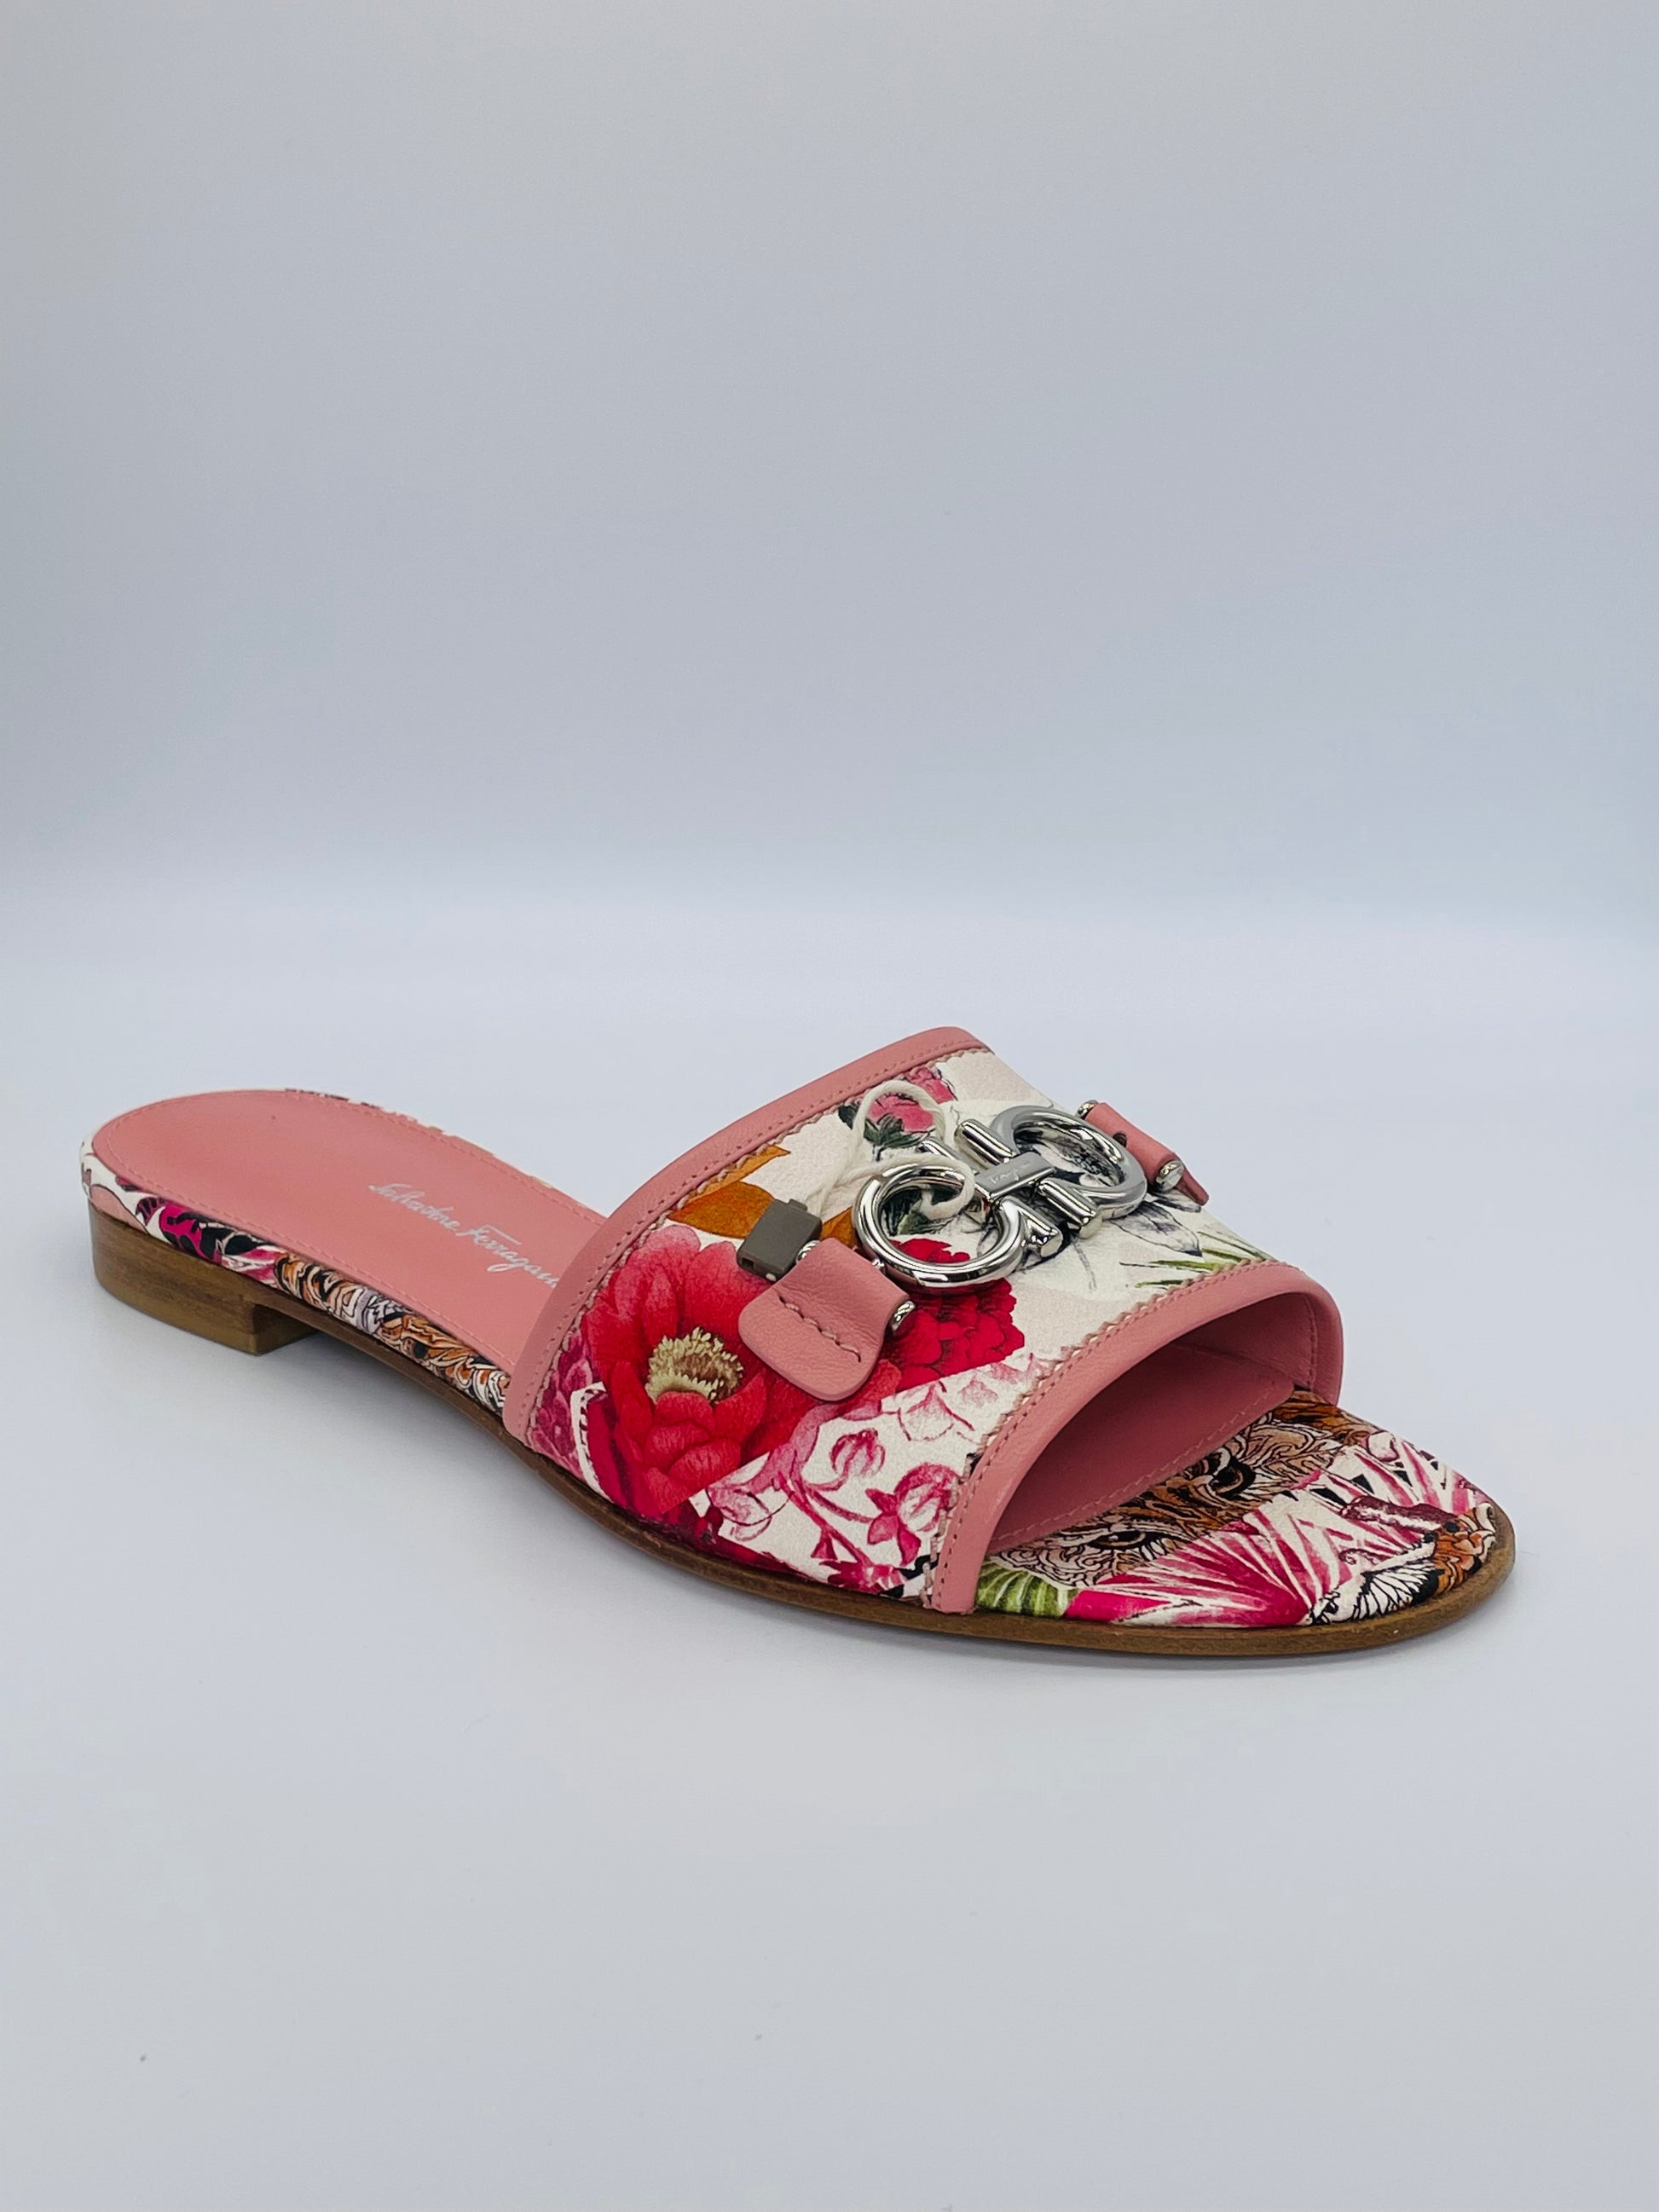 Salvatore Ferragamo Ferragamo Women's Groovy Gancini Slide Sandals